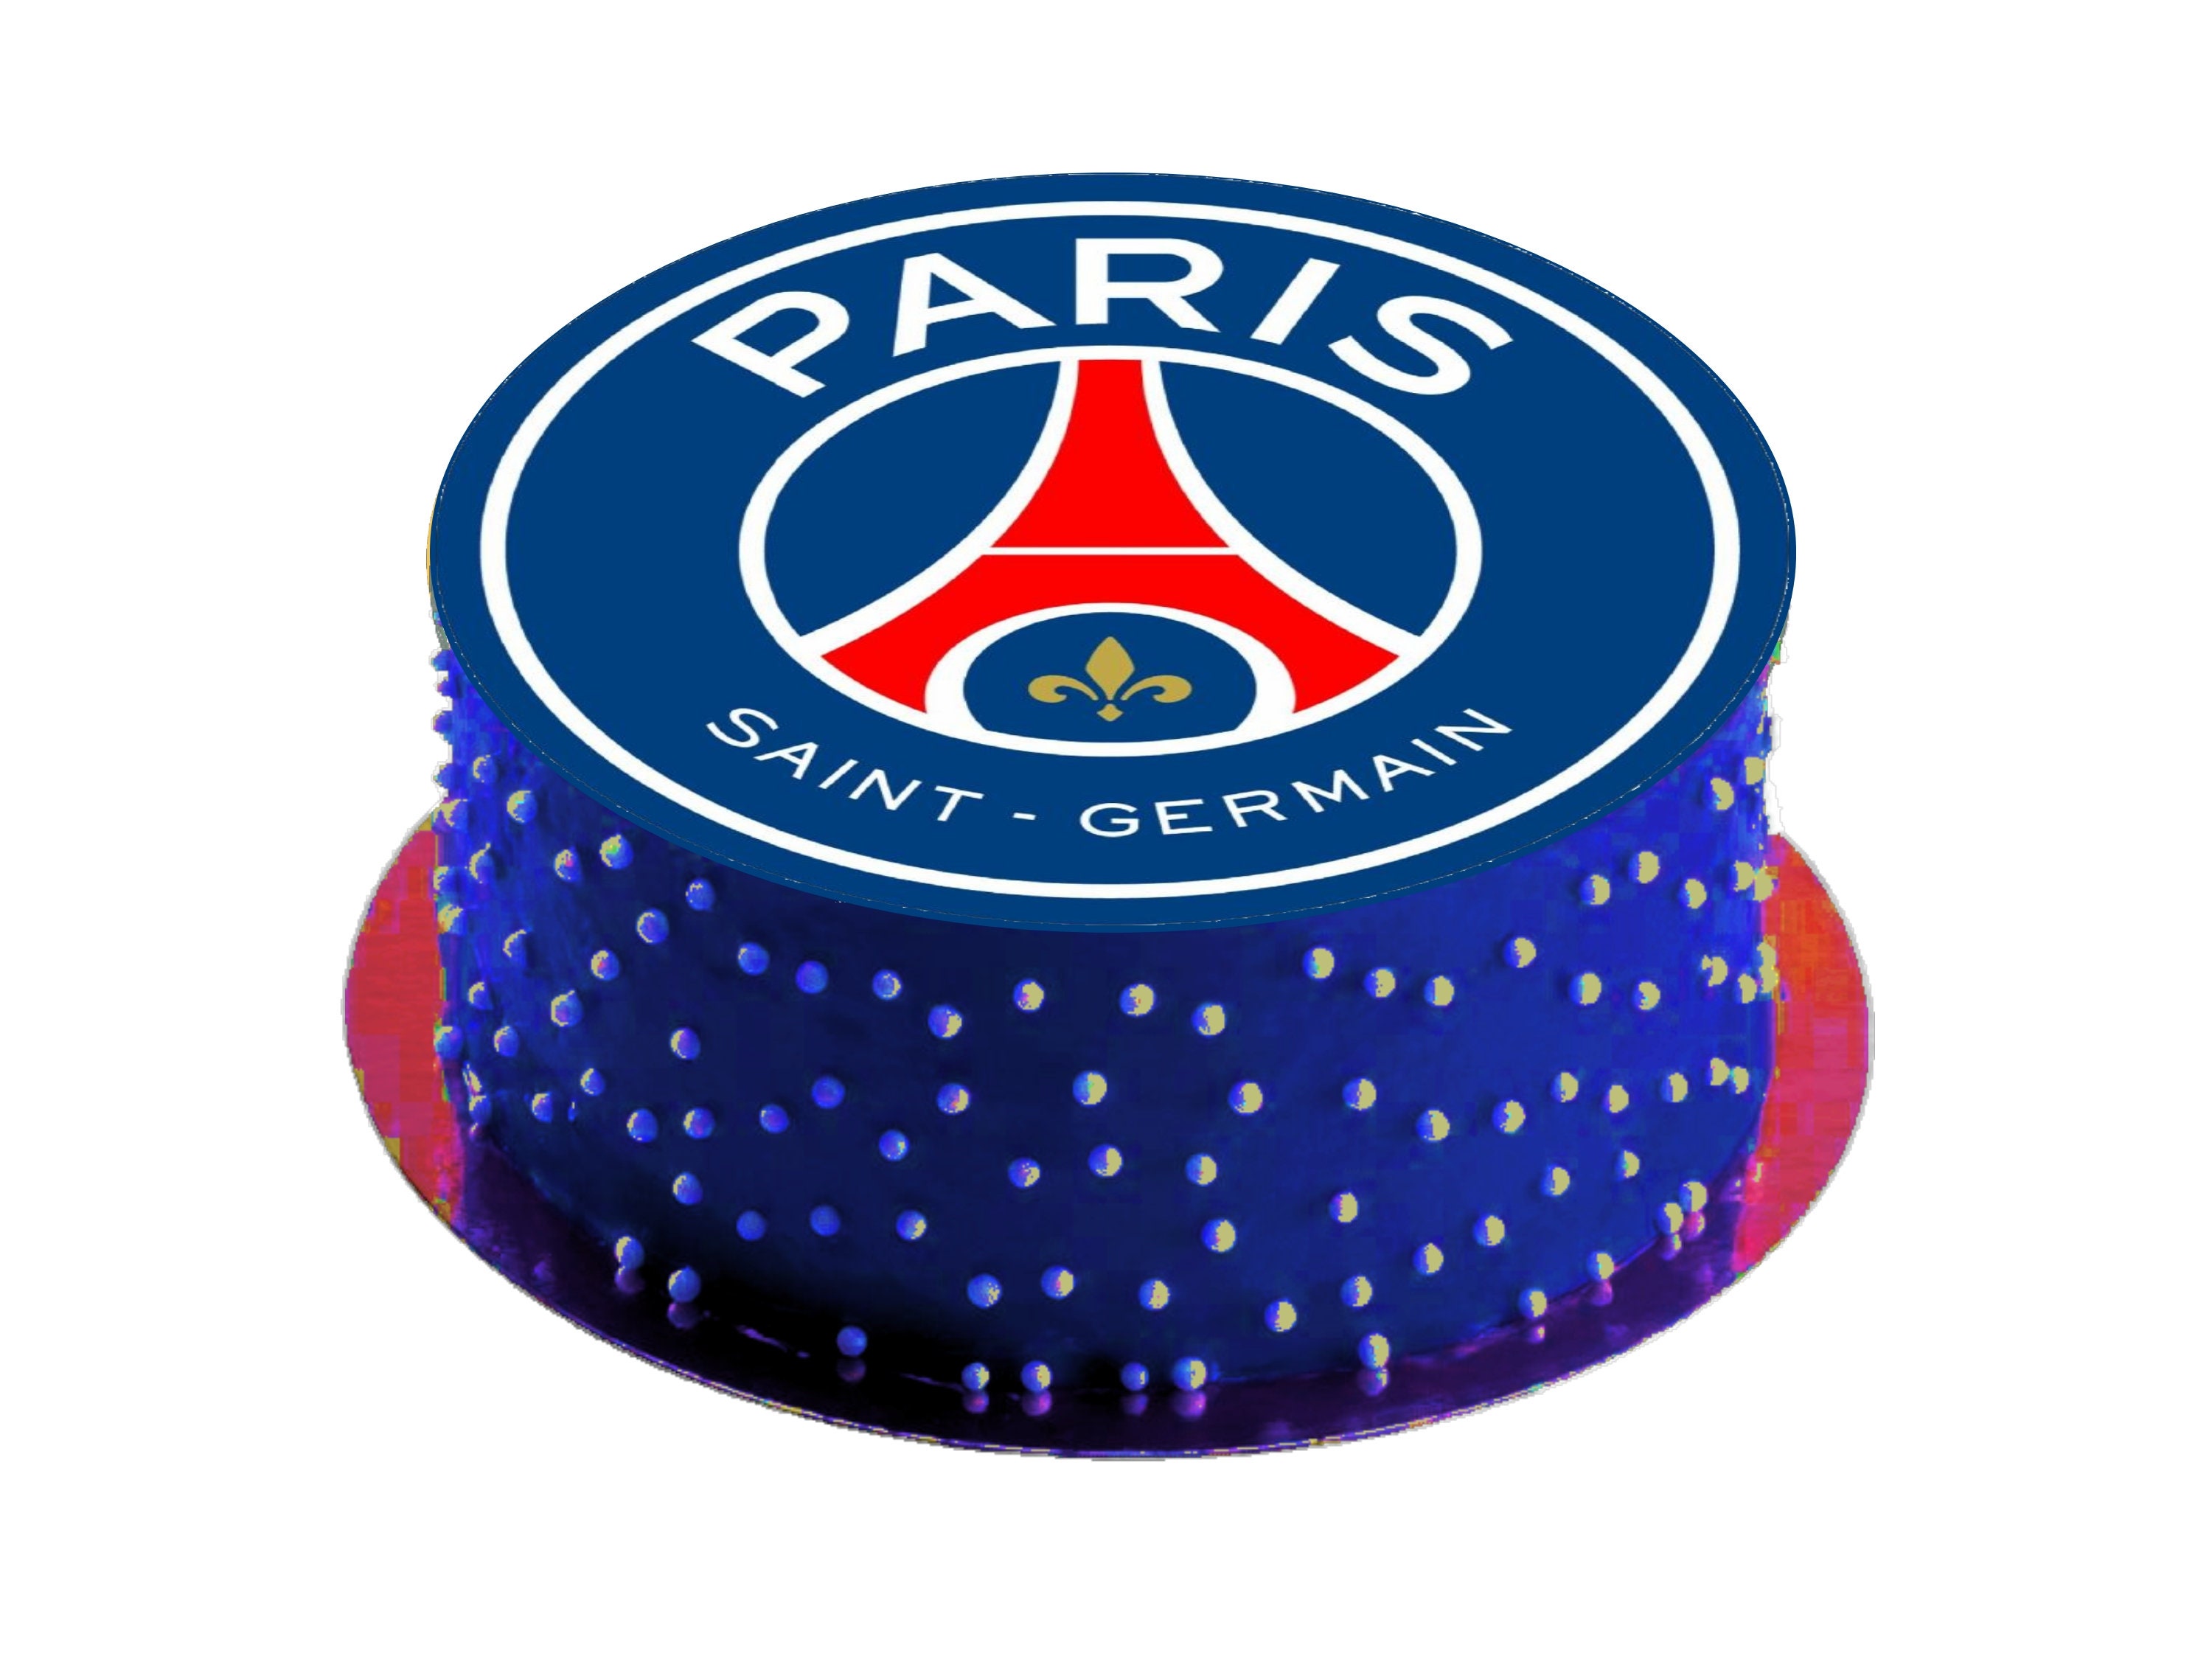 Psg cake topper -  France